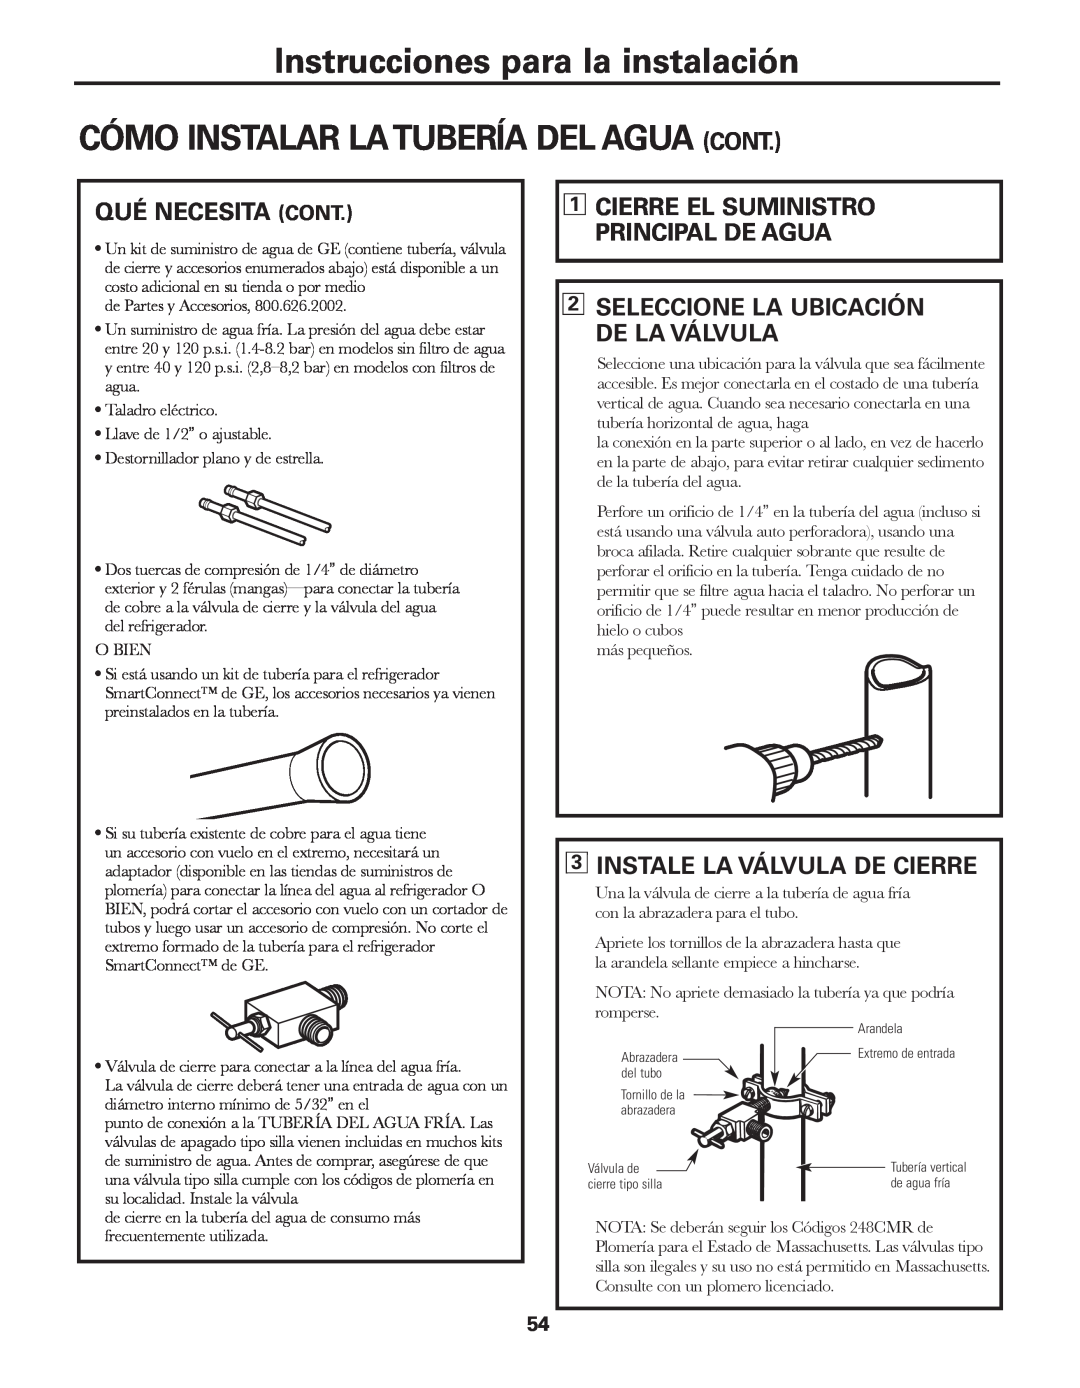 GE GARF19XXYK, ED5KVEXVQ manual Cómo Instalar Latubería Del Agua Cont, Qué Necesita Cont, 3INSTALE LA VÁLVULA DE CIERRE 